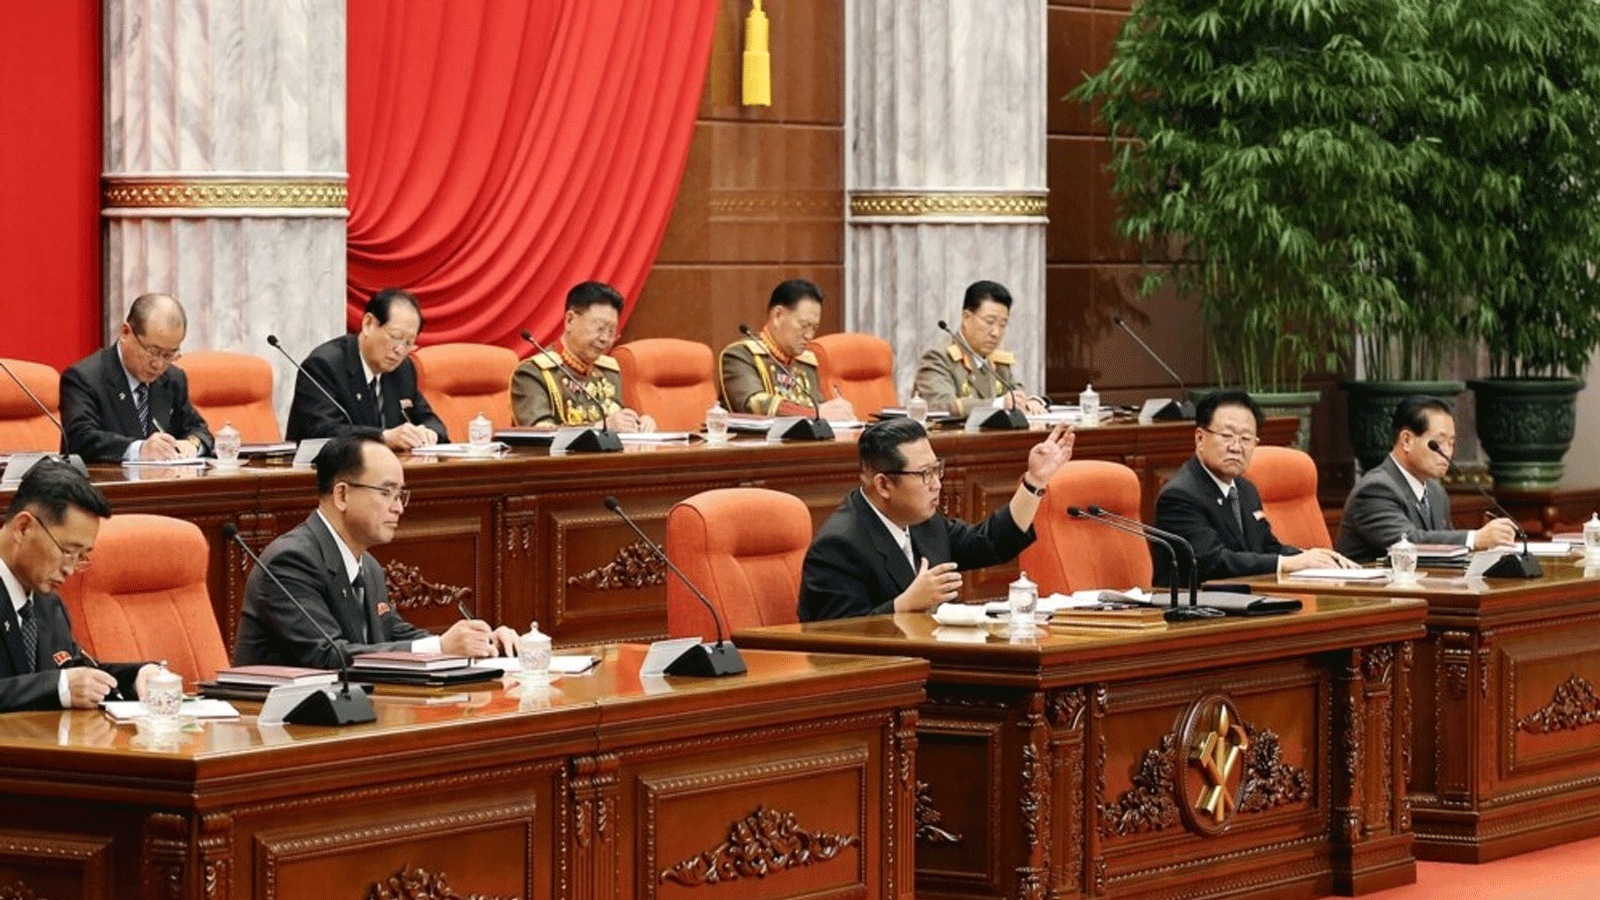 صورة أرشيفية لزعيم كوريا الشمالية كيم جونغ، وسط الصورة، يحضر الاجتماع العام الرابع للجنة المركزية الثامنة لحزب العمال الكوري. 27 كانون الأول\ديسمبر 2021